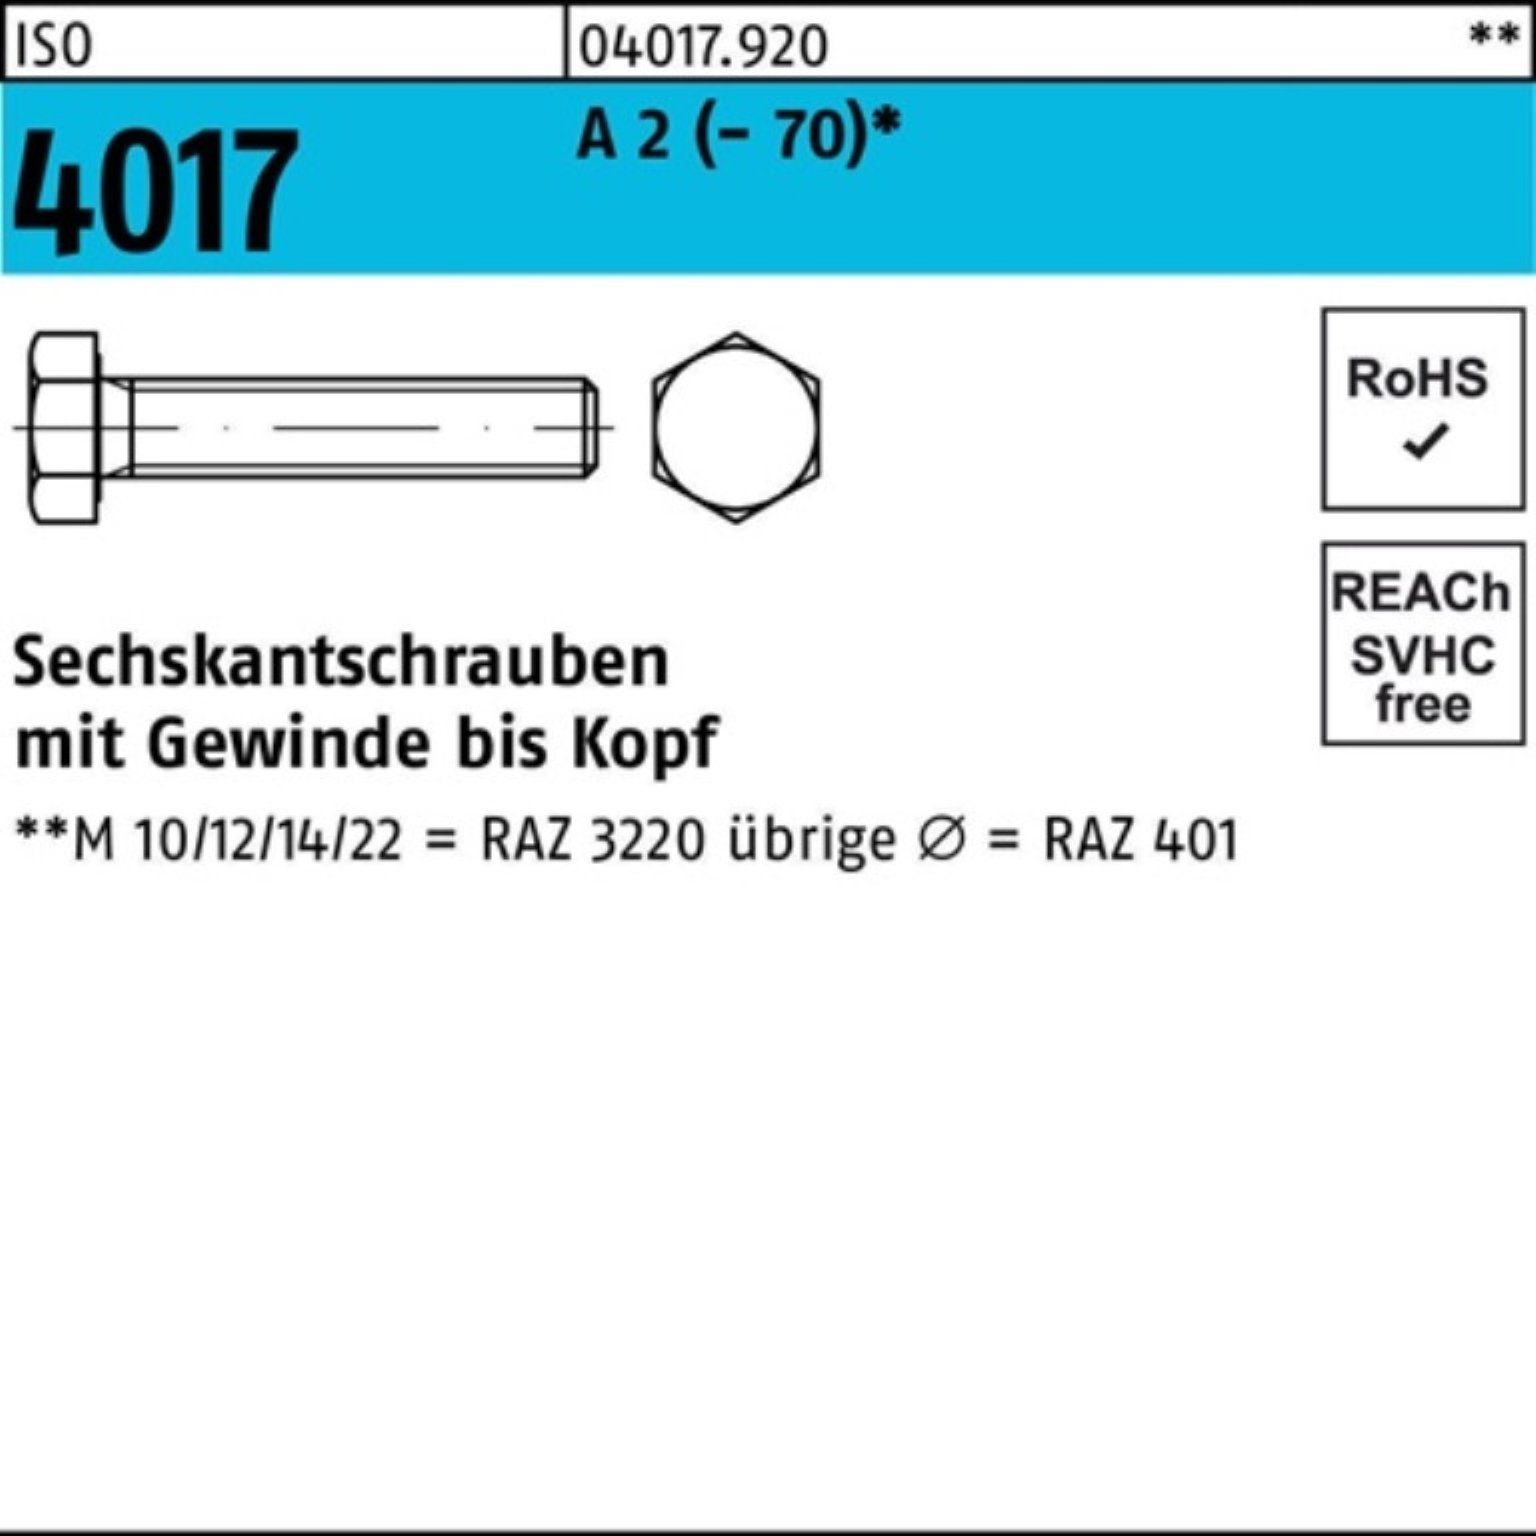 100 Pack (70) Bufab Sechskantschraube Sechskantschraube 100er 16 A M10x ISO Stück 2 VG 4017